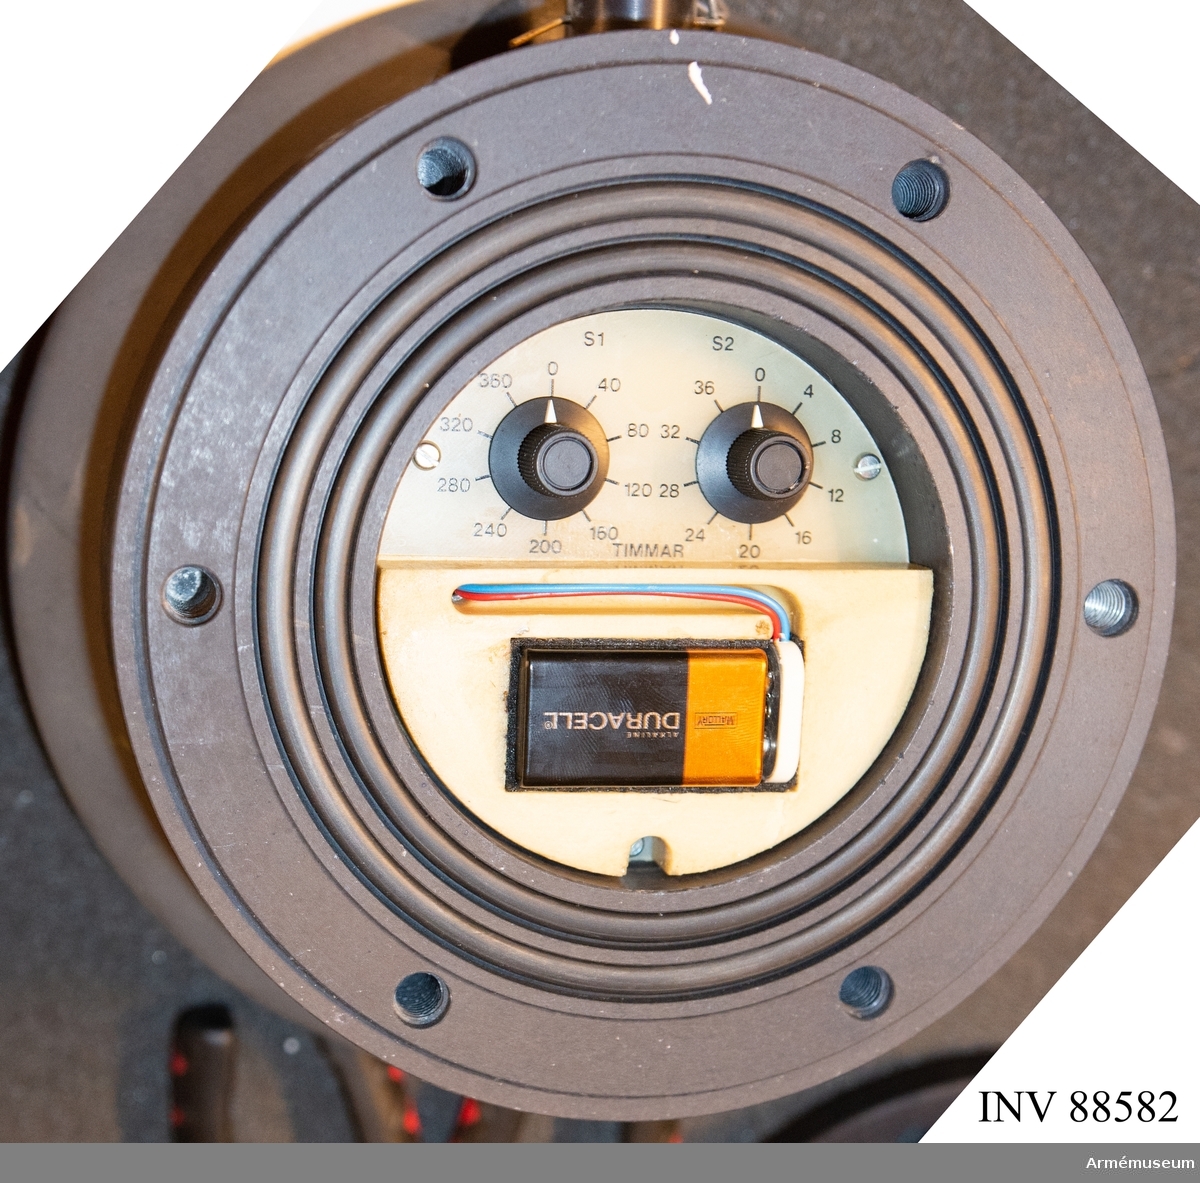 Tidsinställd undervattenständare till strvmina m/1941-47. Minsta utläggningsdjup är 4 meter och tidsinstaällningen kan varieras mellan i 4 timmarsintervall från 4 till 396 timmar. Timern är elektronisk och uppbyggd i CMOS-teknik och därmed mycket strömsnål samt okritisk beträffande matningsspänning och drivs av ett vanligt 9 volts batteri. Tändaren är konstruerad för att motstå höga chocktryck vid undervattensdetonationer. Tändaren armeras automatiskt av vattentrycket. Verkade som röjningsskydd för utlagda hamnminor mot främmande dykare. Användes av kustartilleriet. Se länkade filer samt bilder på innanmätet.